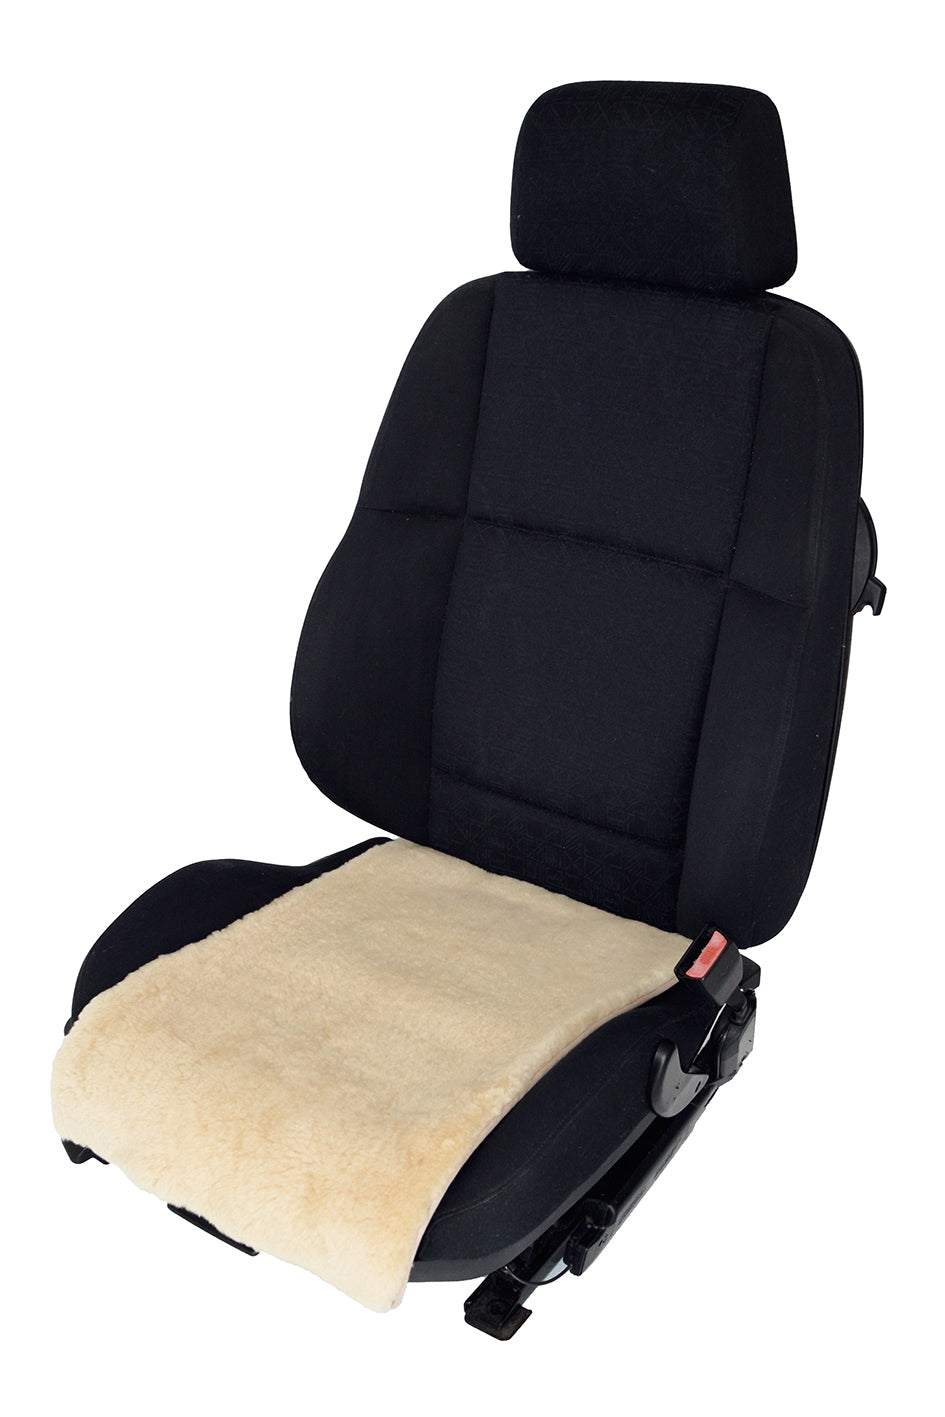 Universal Autositzauflage Auto Sitzkissen Vorne Hinten Sitzbezug